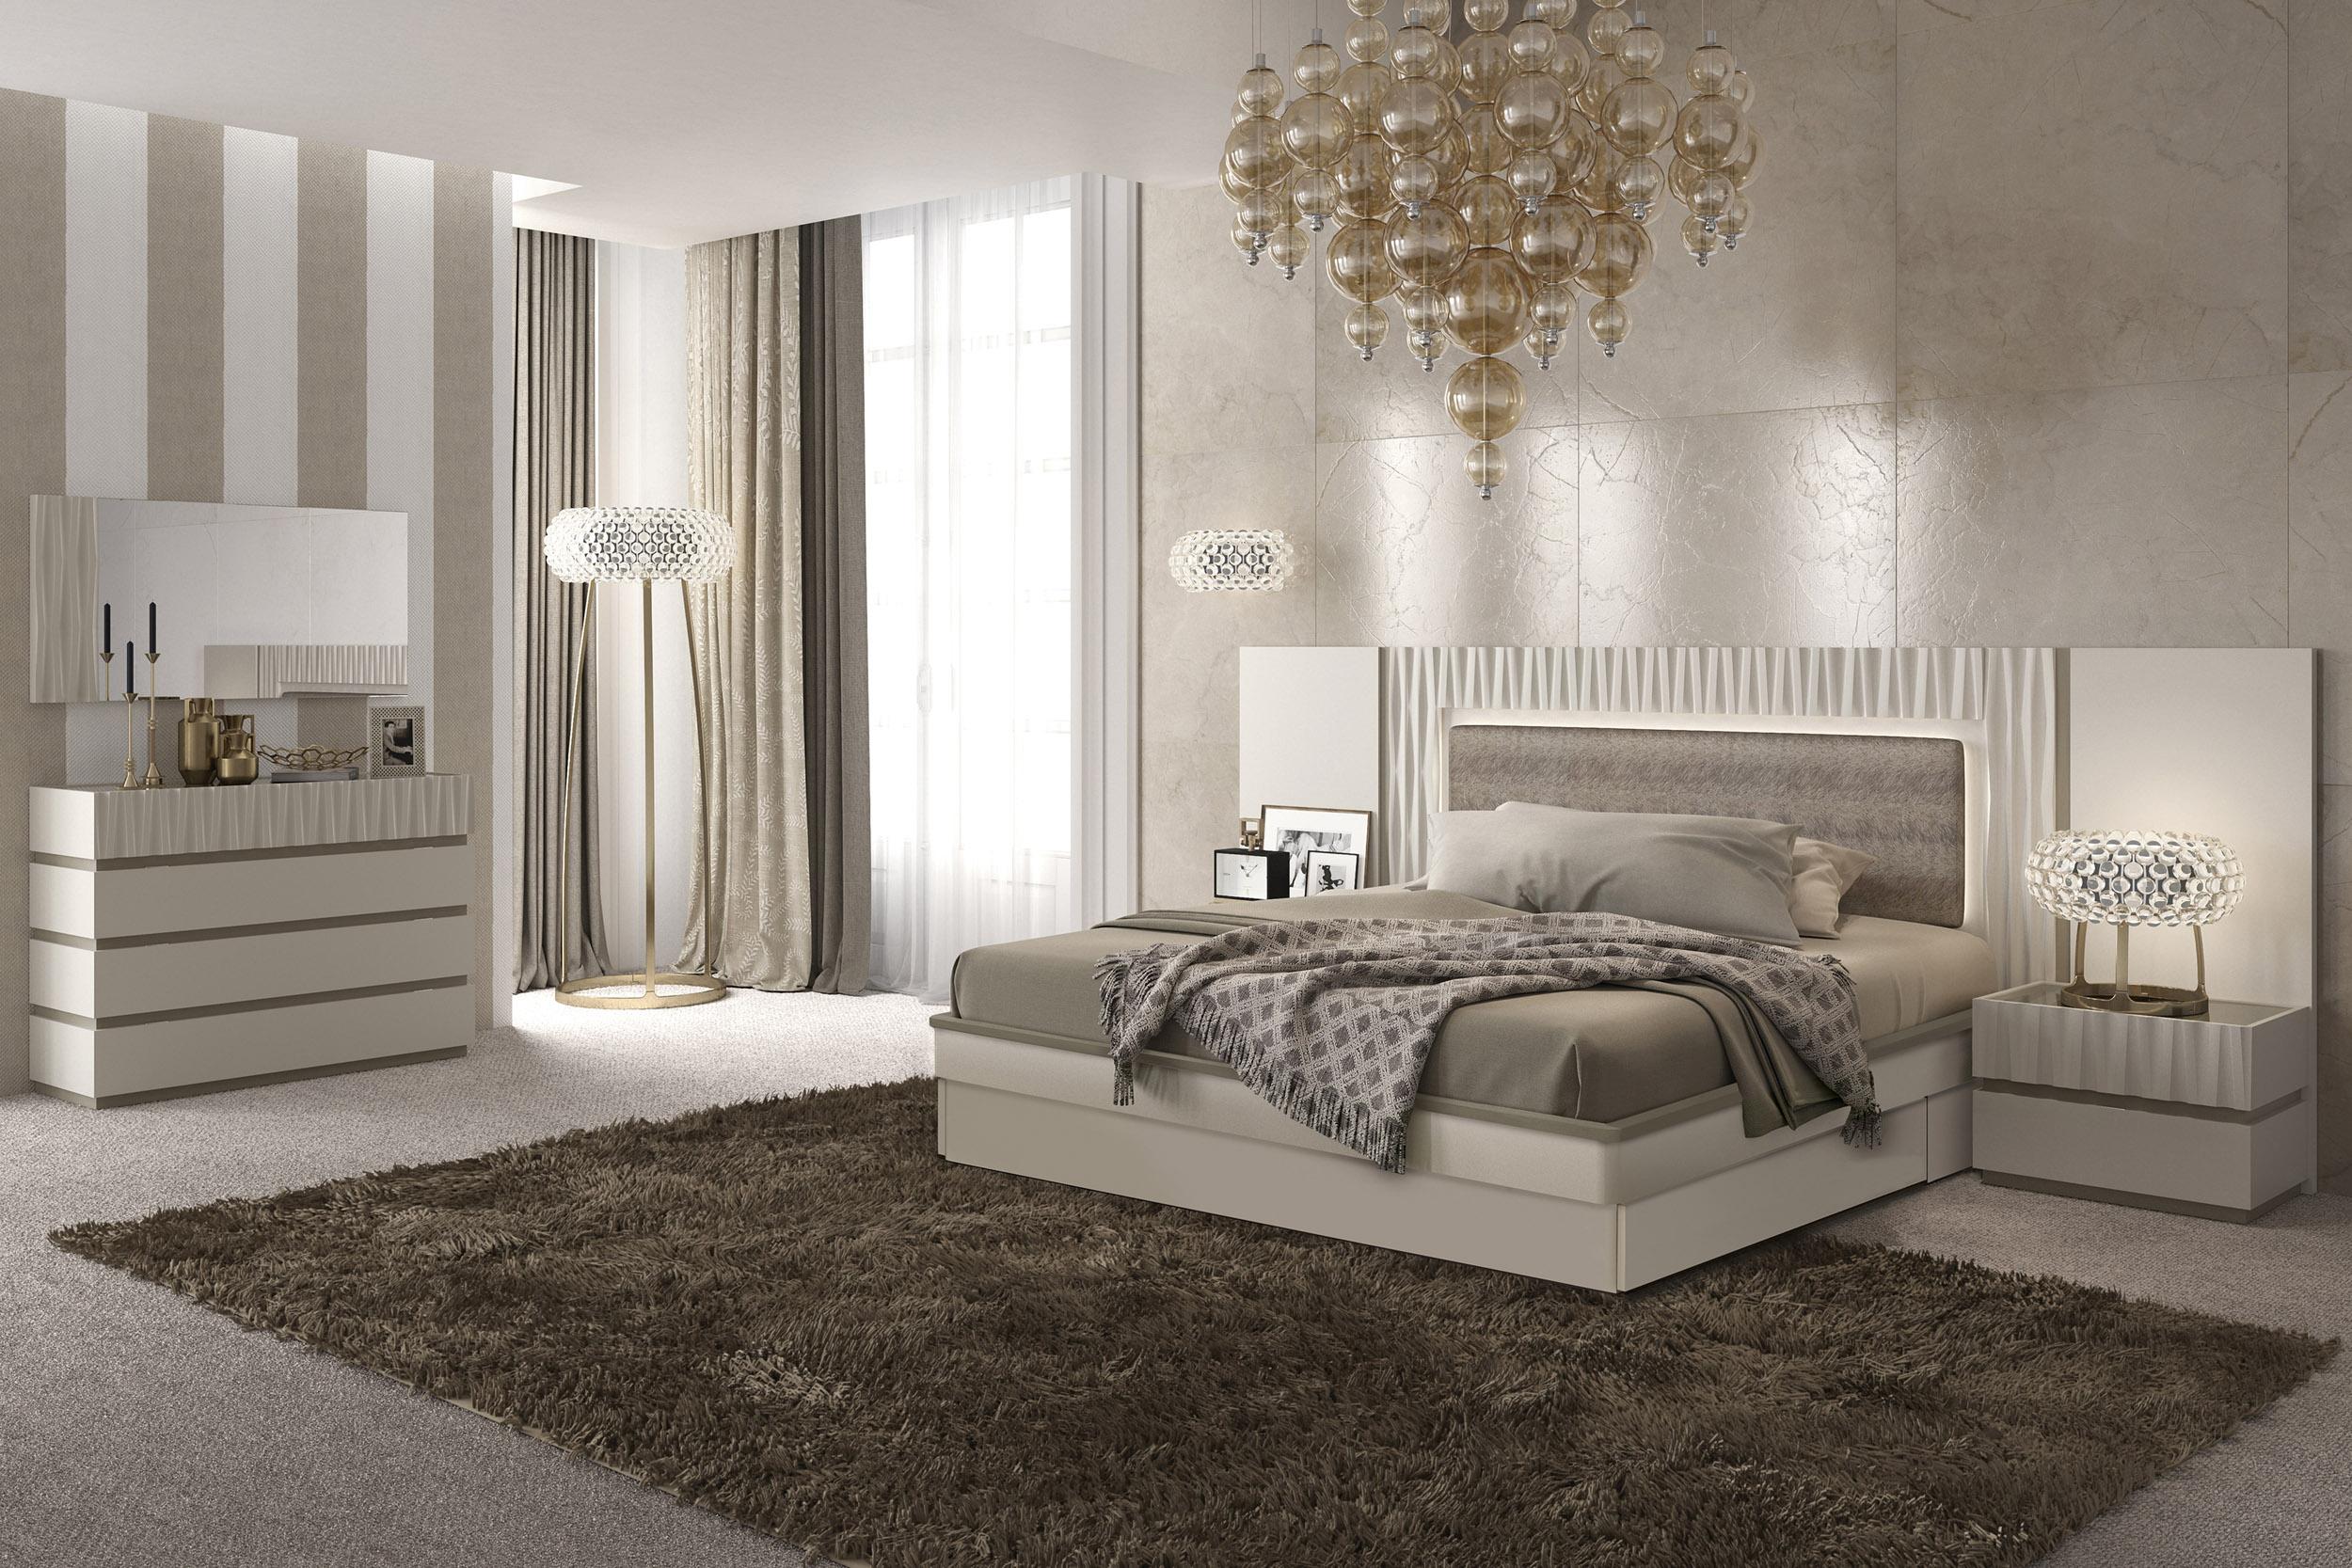 buy modern furniture for bedroom online